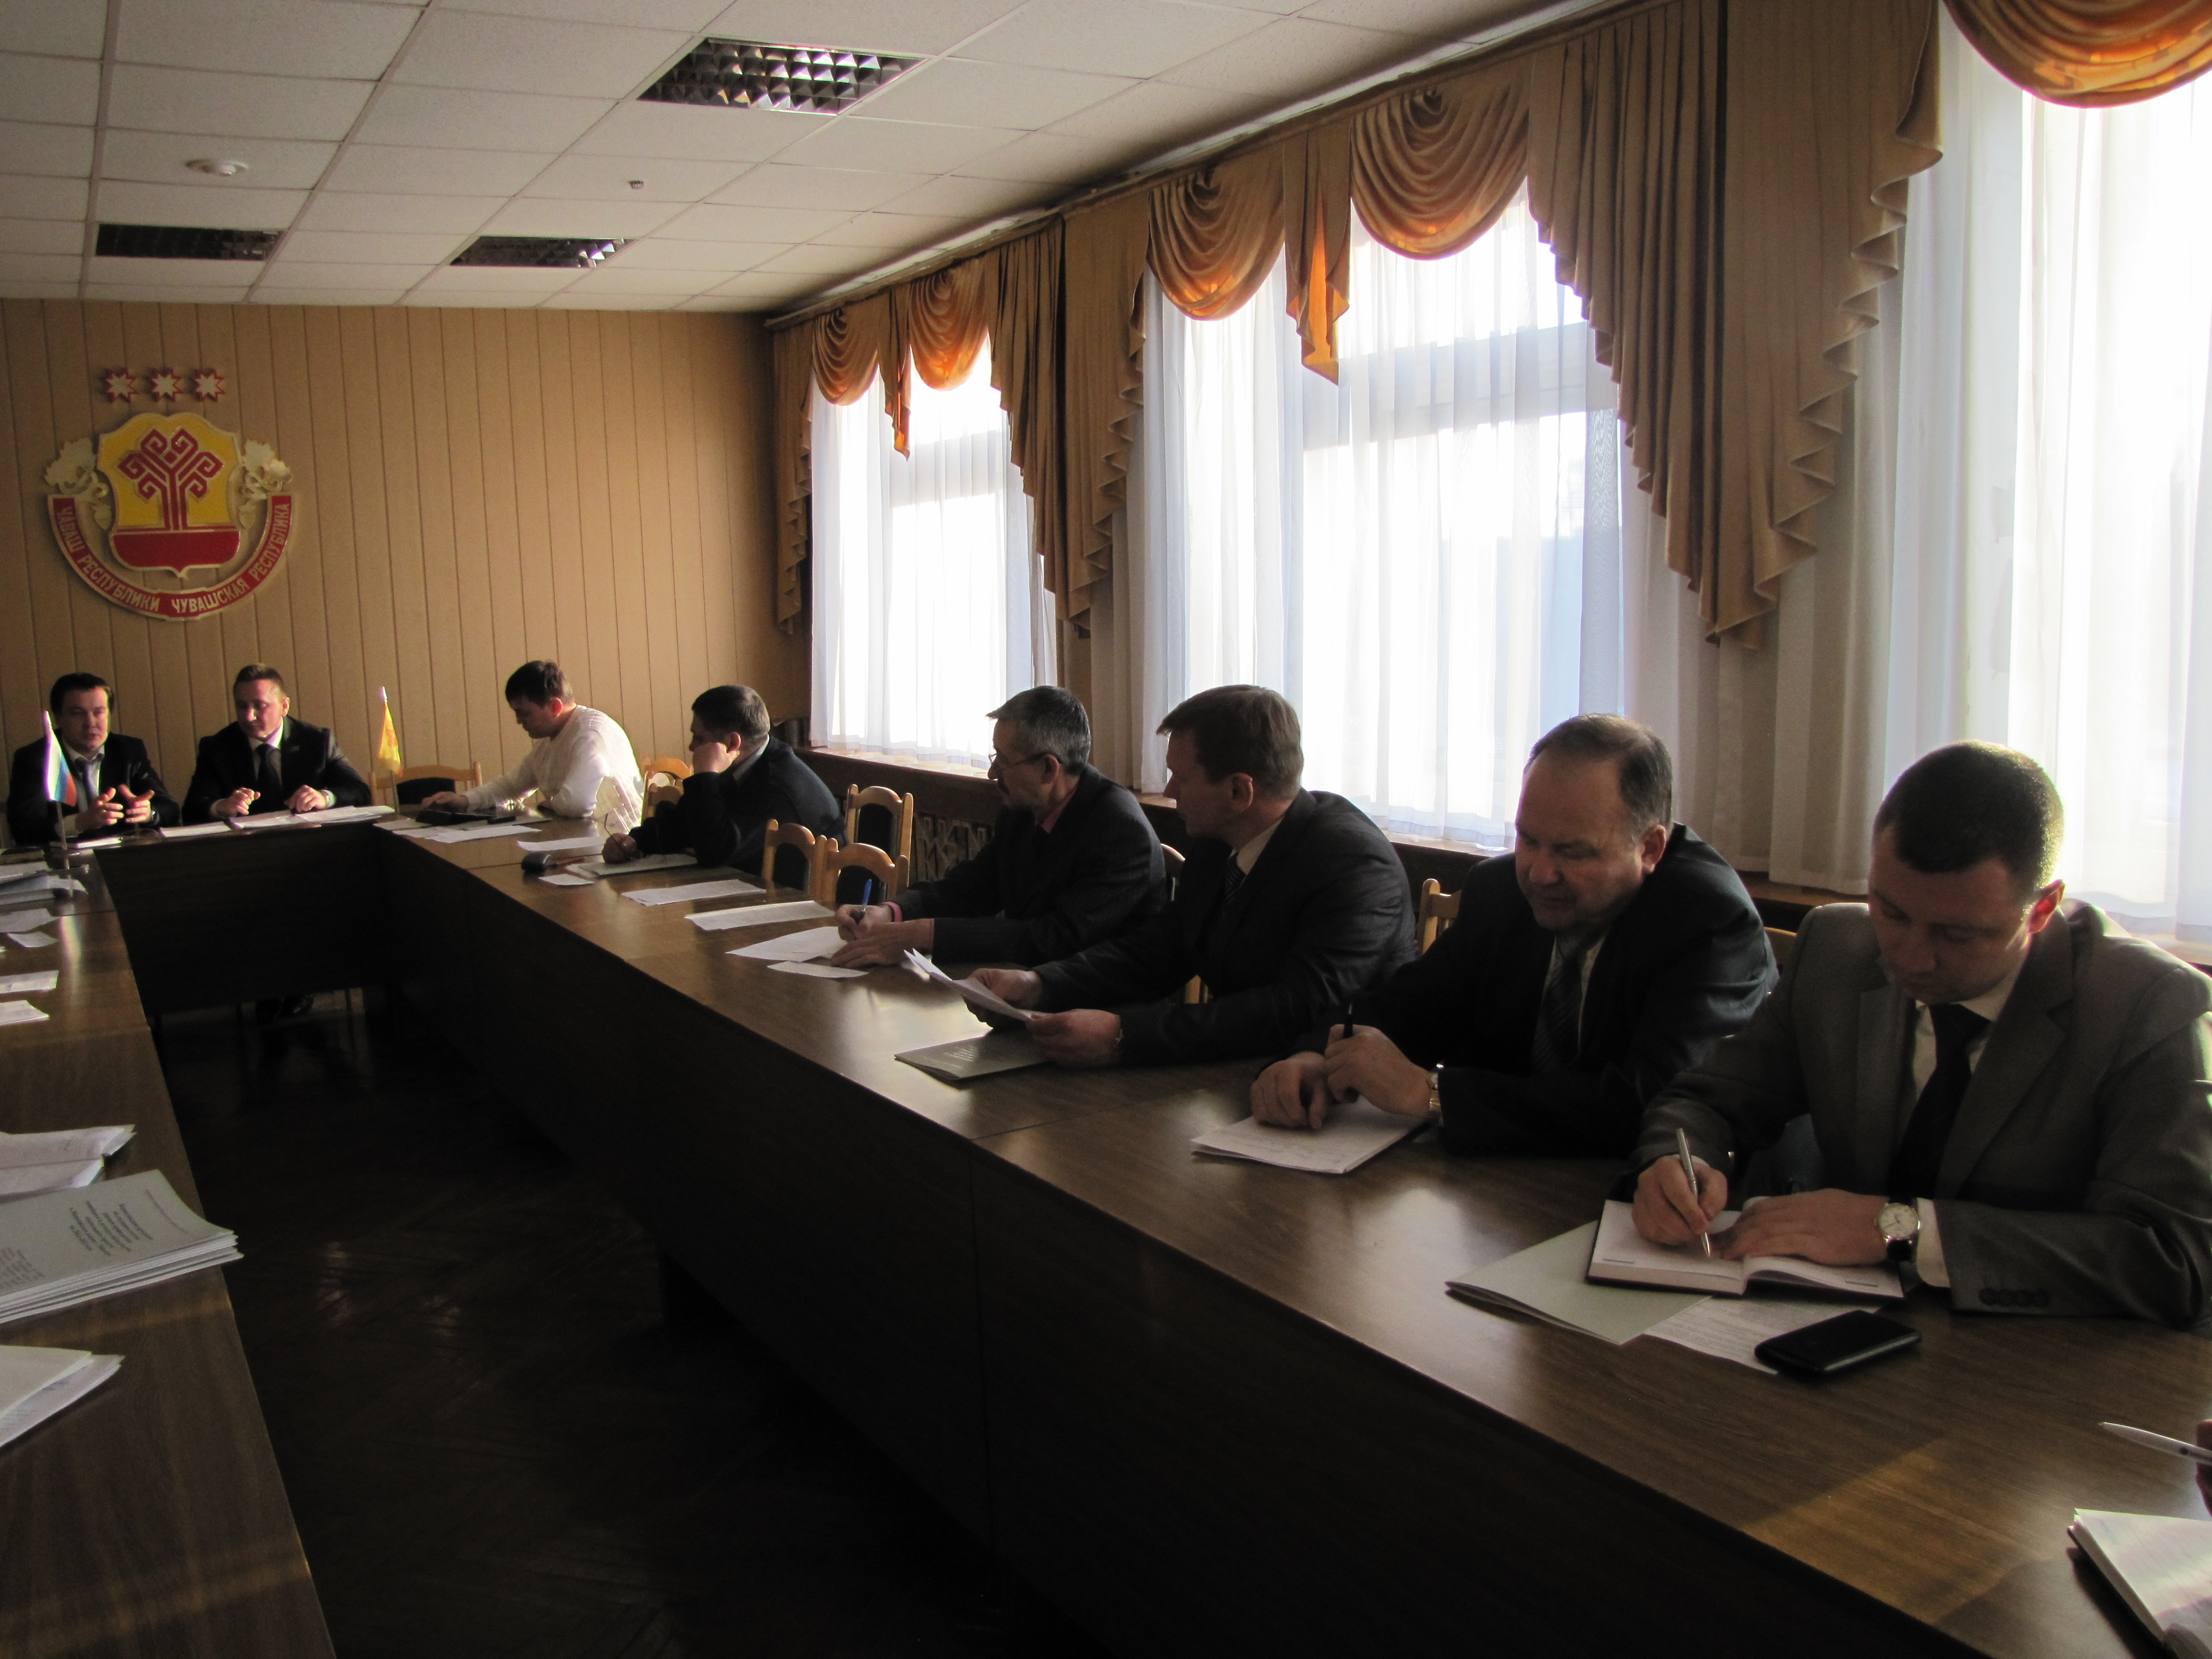 08:46 В Московском районе г.Чебоксары создан Совет отцов 